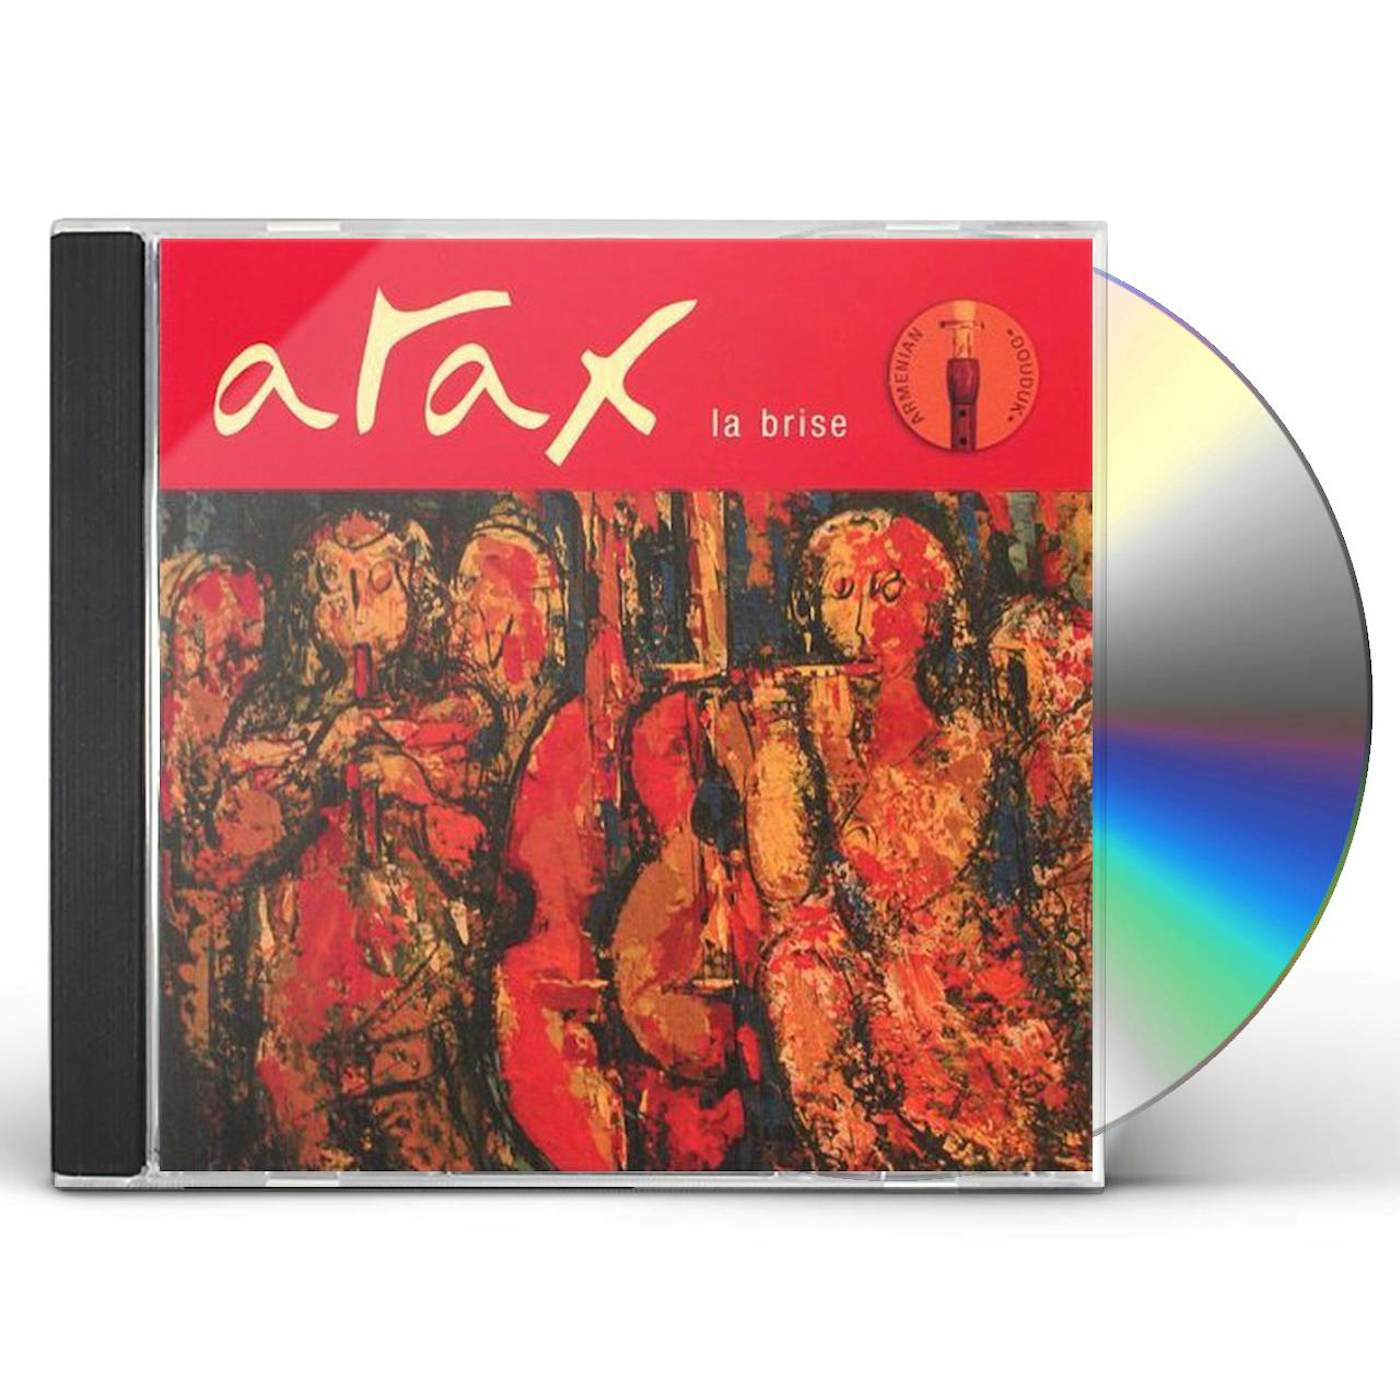 Arax LA BRISE CD